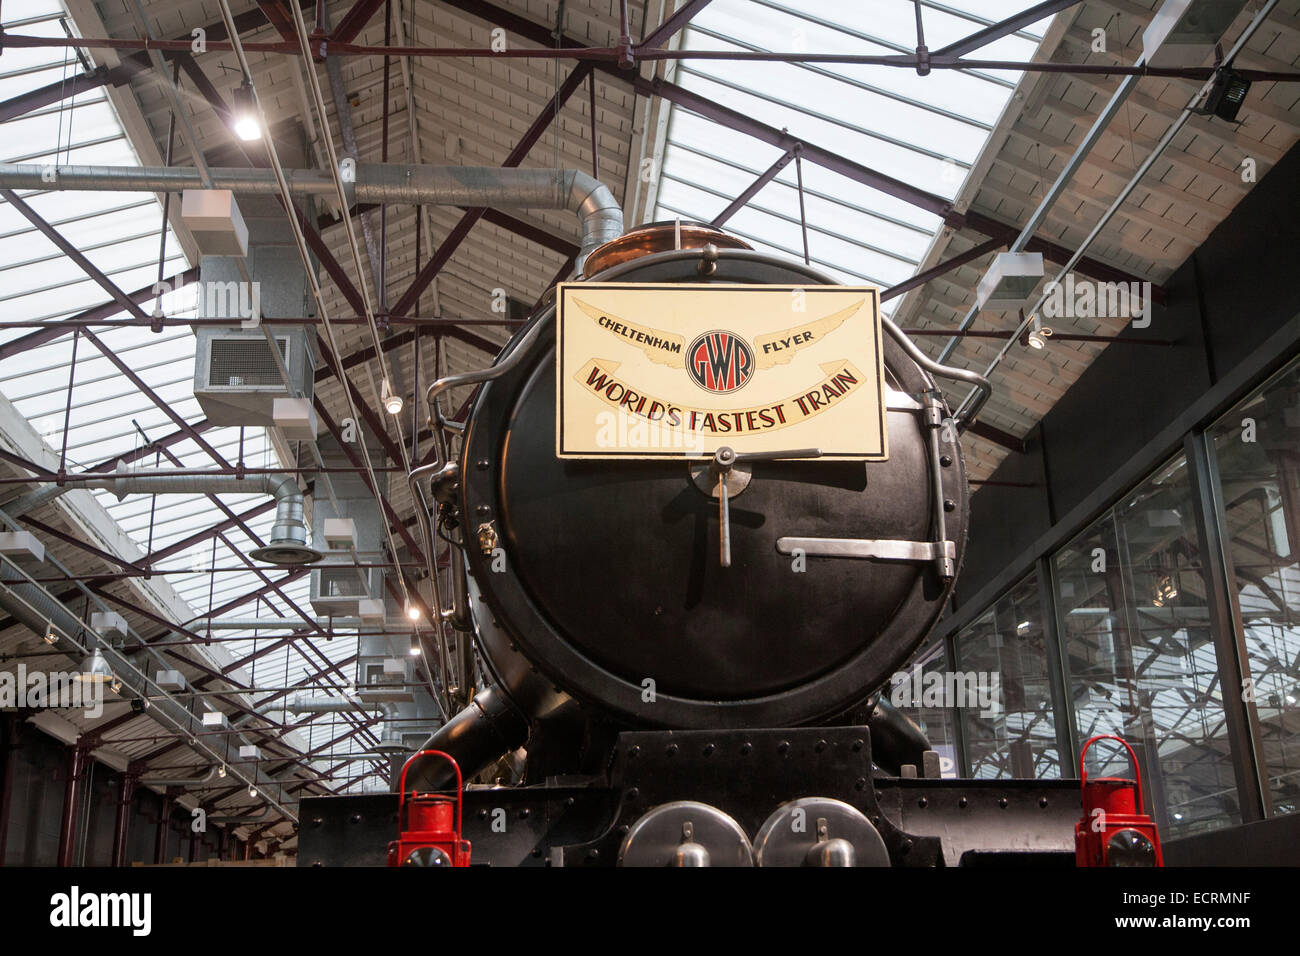 GWR il museo dei treni a vapore Swindon, Inghilterra, Regno Unito più veloce del mondo treno Cheltenham Flyer Castello di Caerphilly Foto Stock